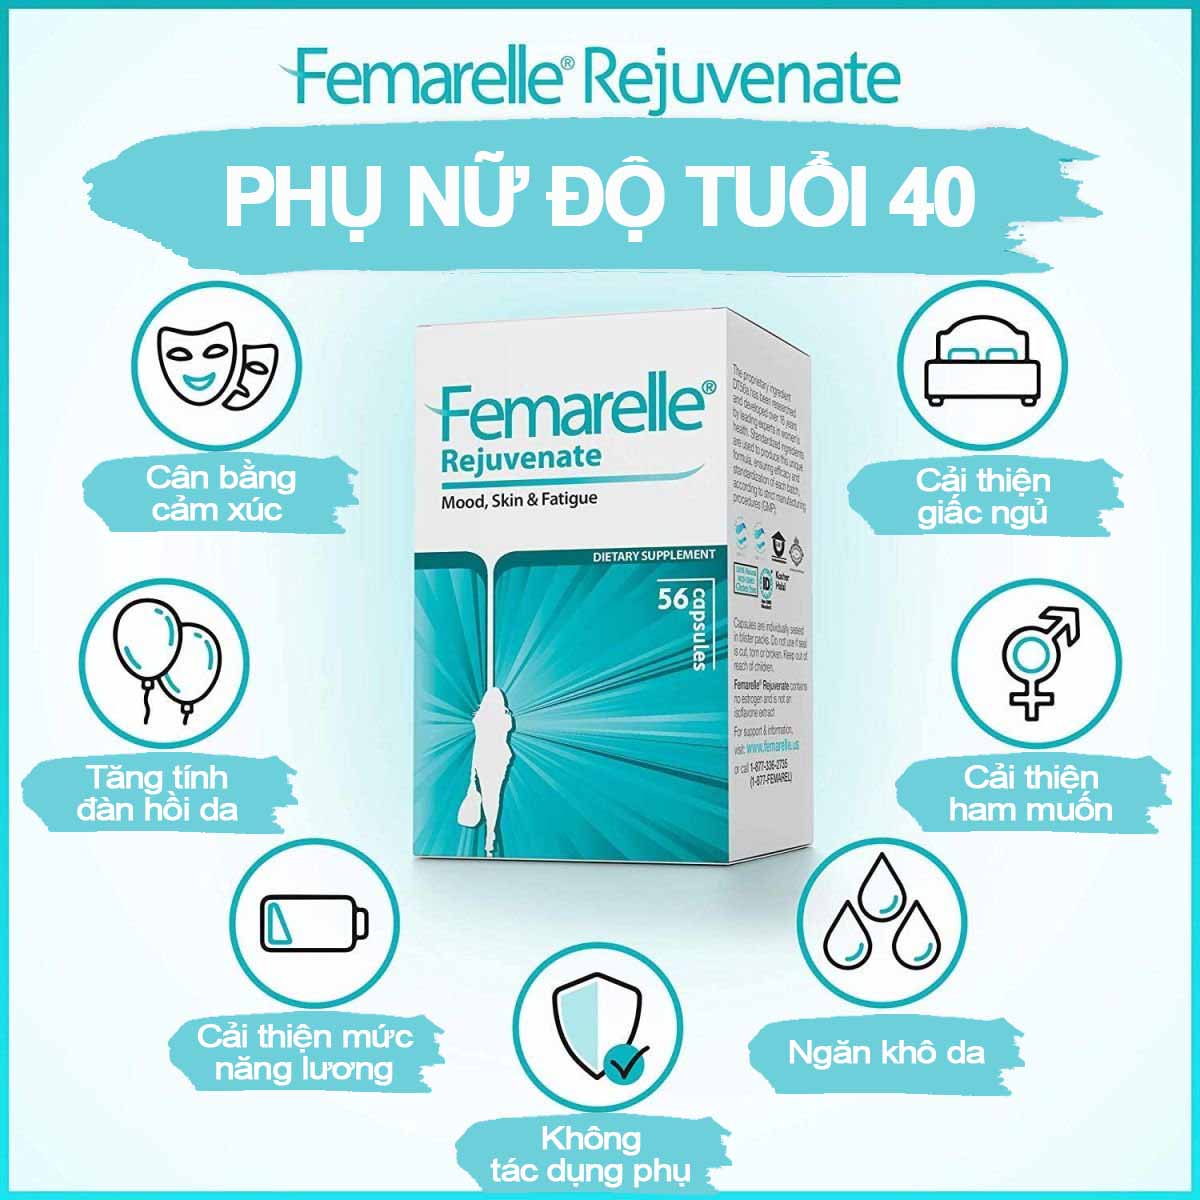 Femarelle Rejuvenate-Thực phẩm bảo vệ sức khỏe dành cho PN giai đoạn tiền mãn kinh: Cải thiện cảm xúc, giấc ngủ, giảm mệt mỏi, giúp tóc khỏe, tăng độ đàn hồi cho da...